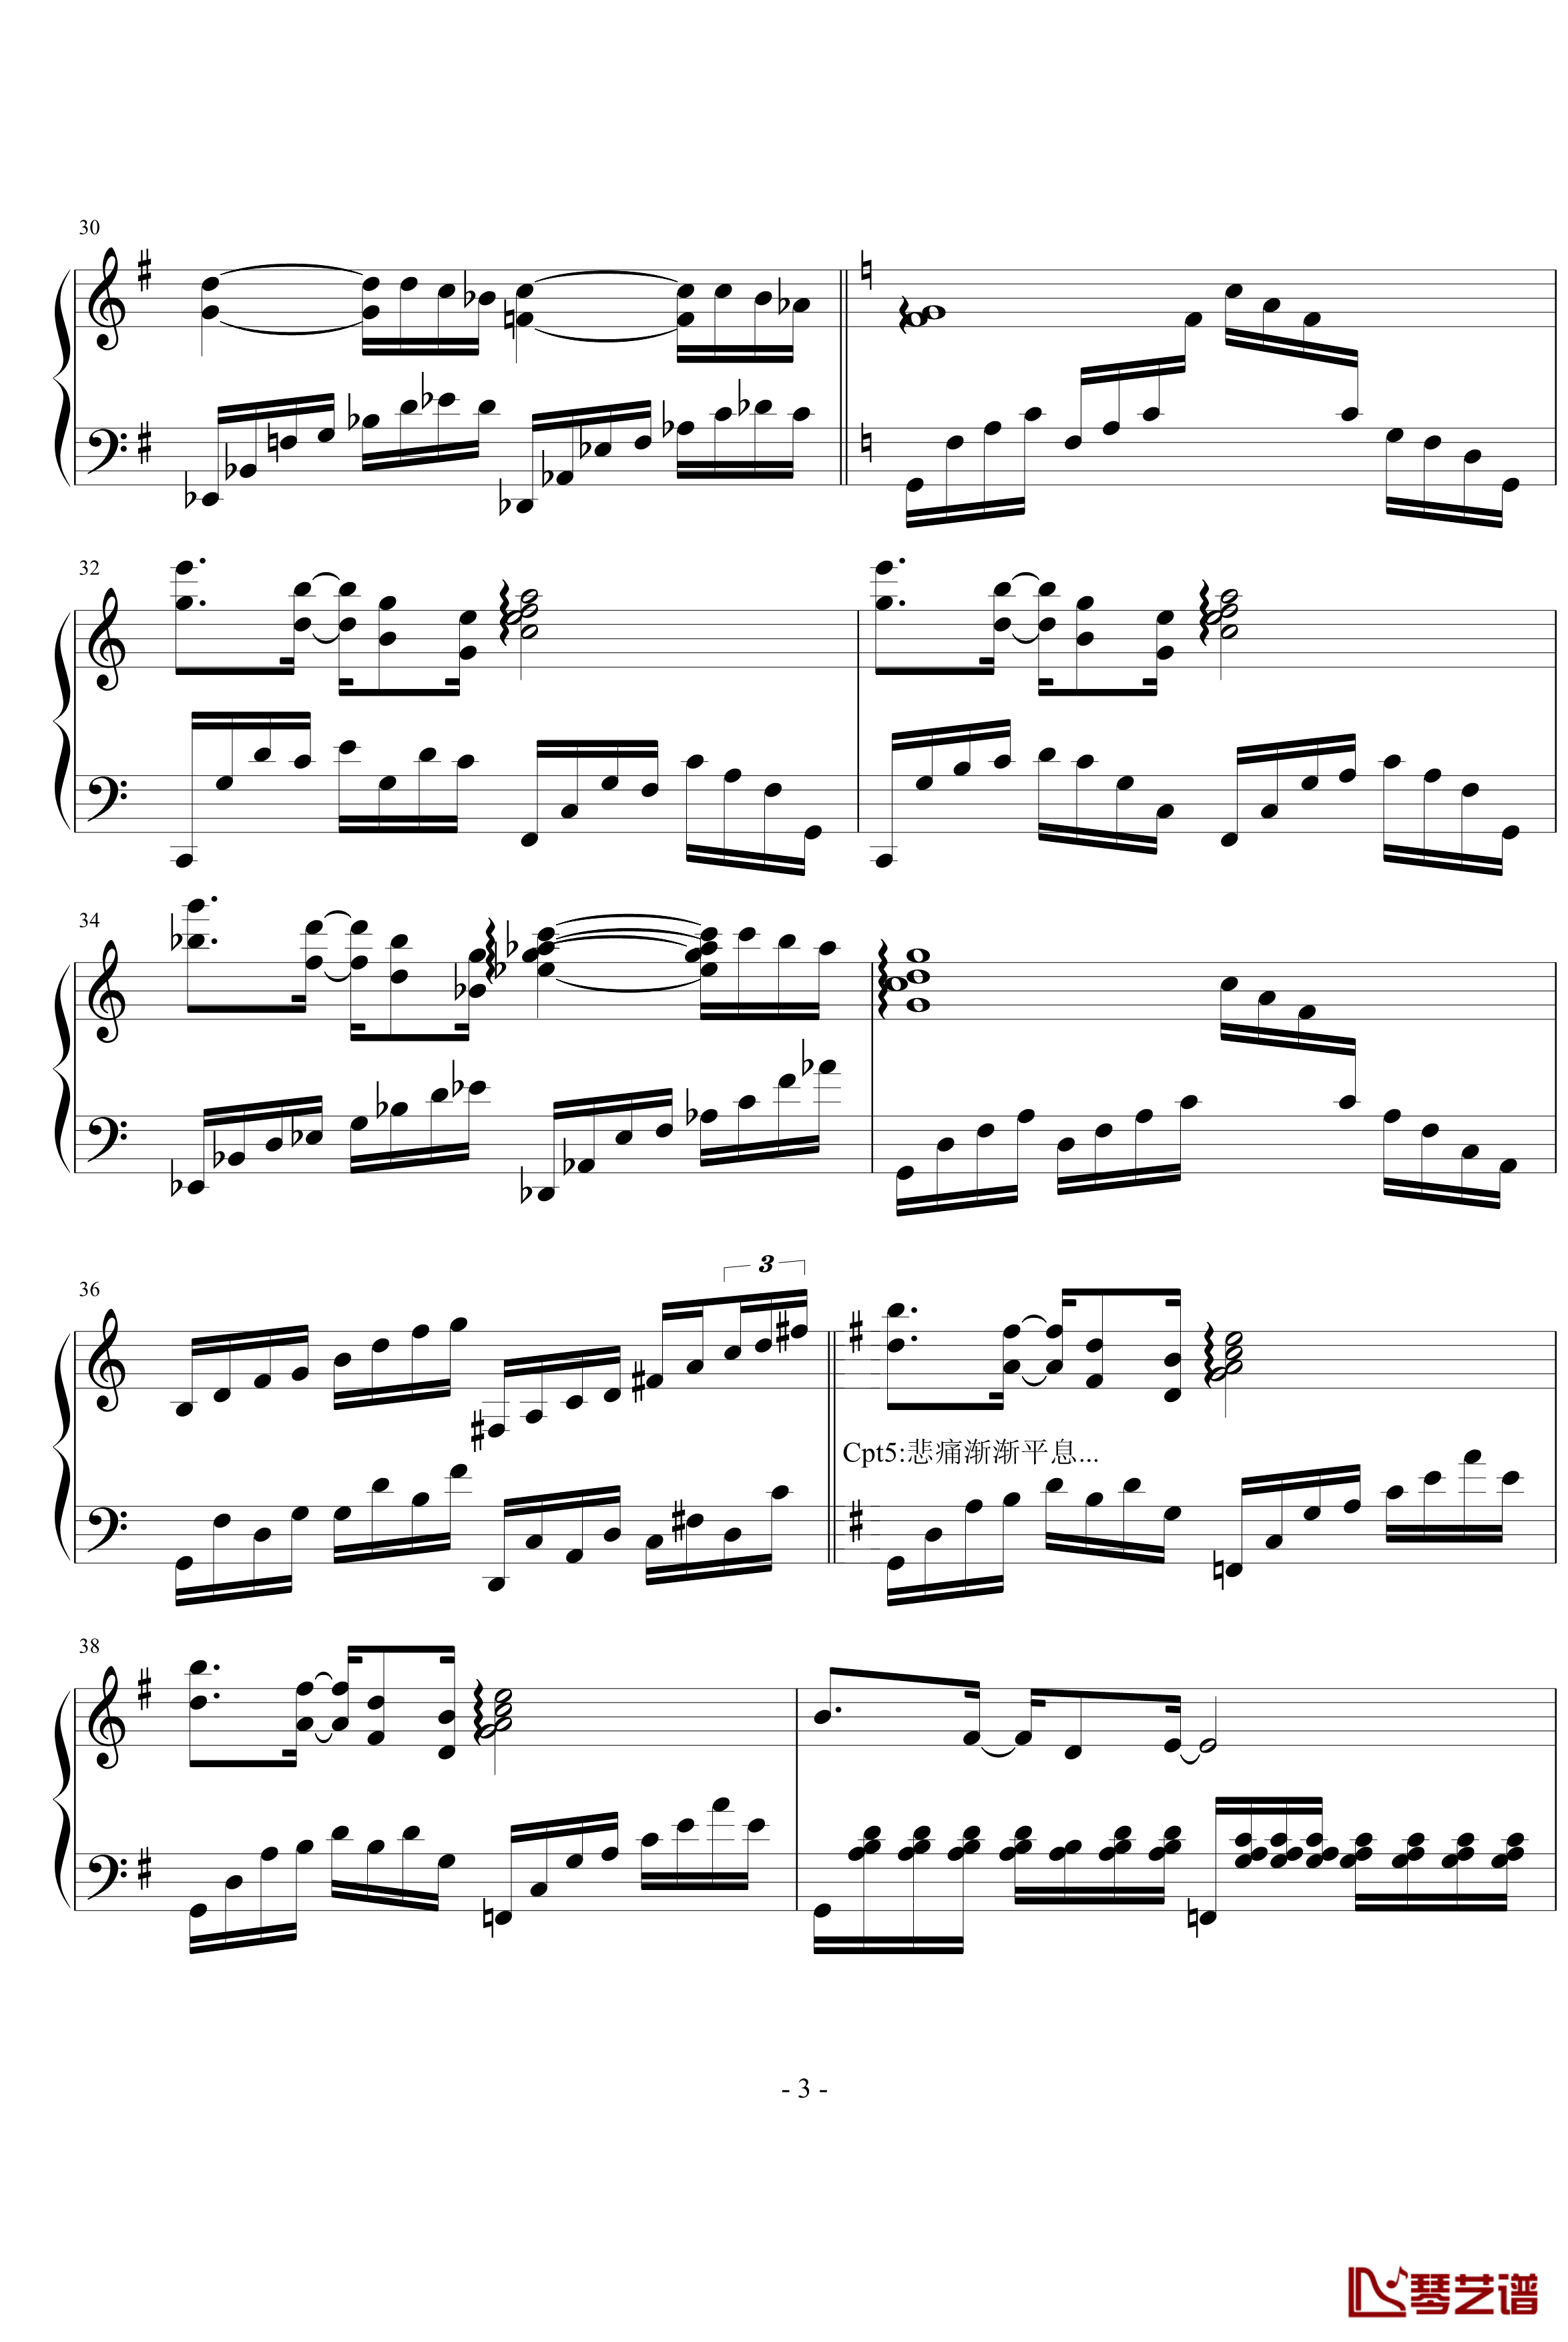 老光棍的痛钢琴谱-光棍组曲vol.3-乱按流之三-钢琴叫兽3